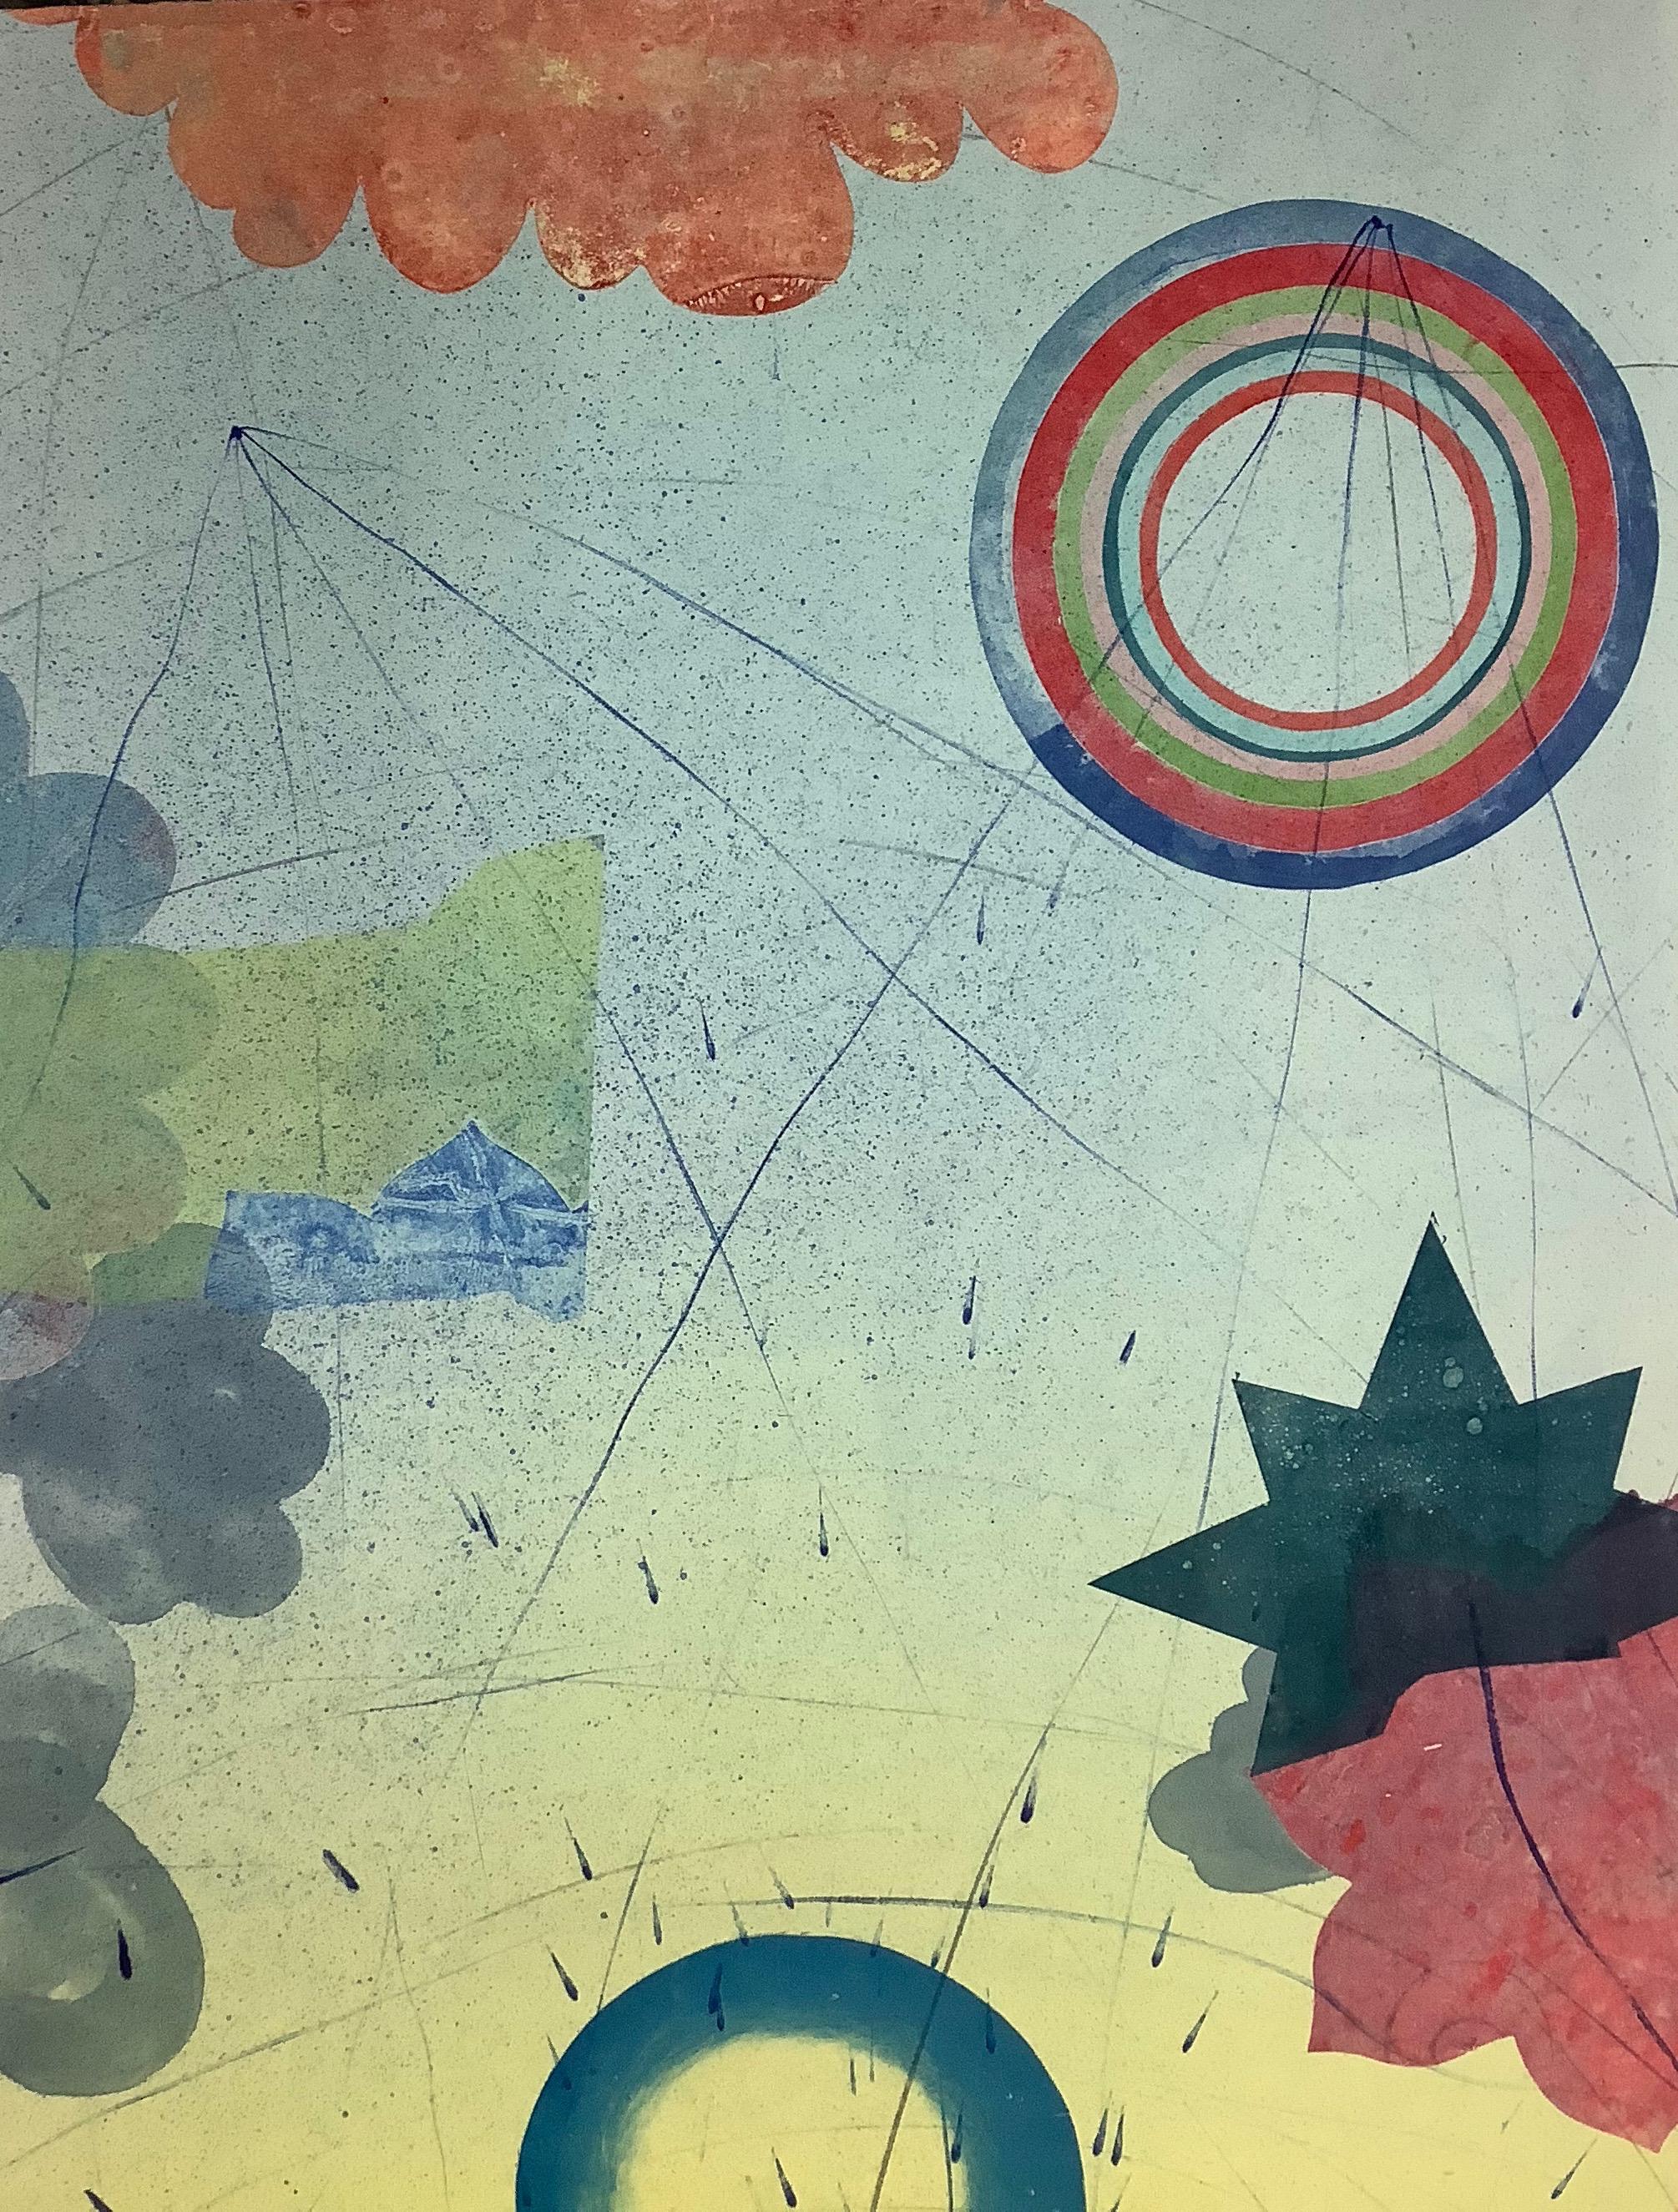 Pilot 22, vertikale abstrakte Monotypie, Teal Blau, Gelb, Koralle, Kreise, Sterne (Zeitgenössisch), Print, von David Collins